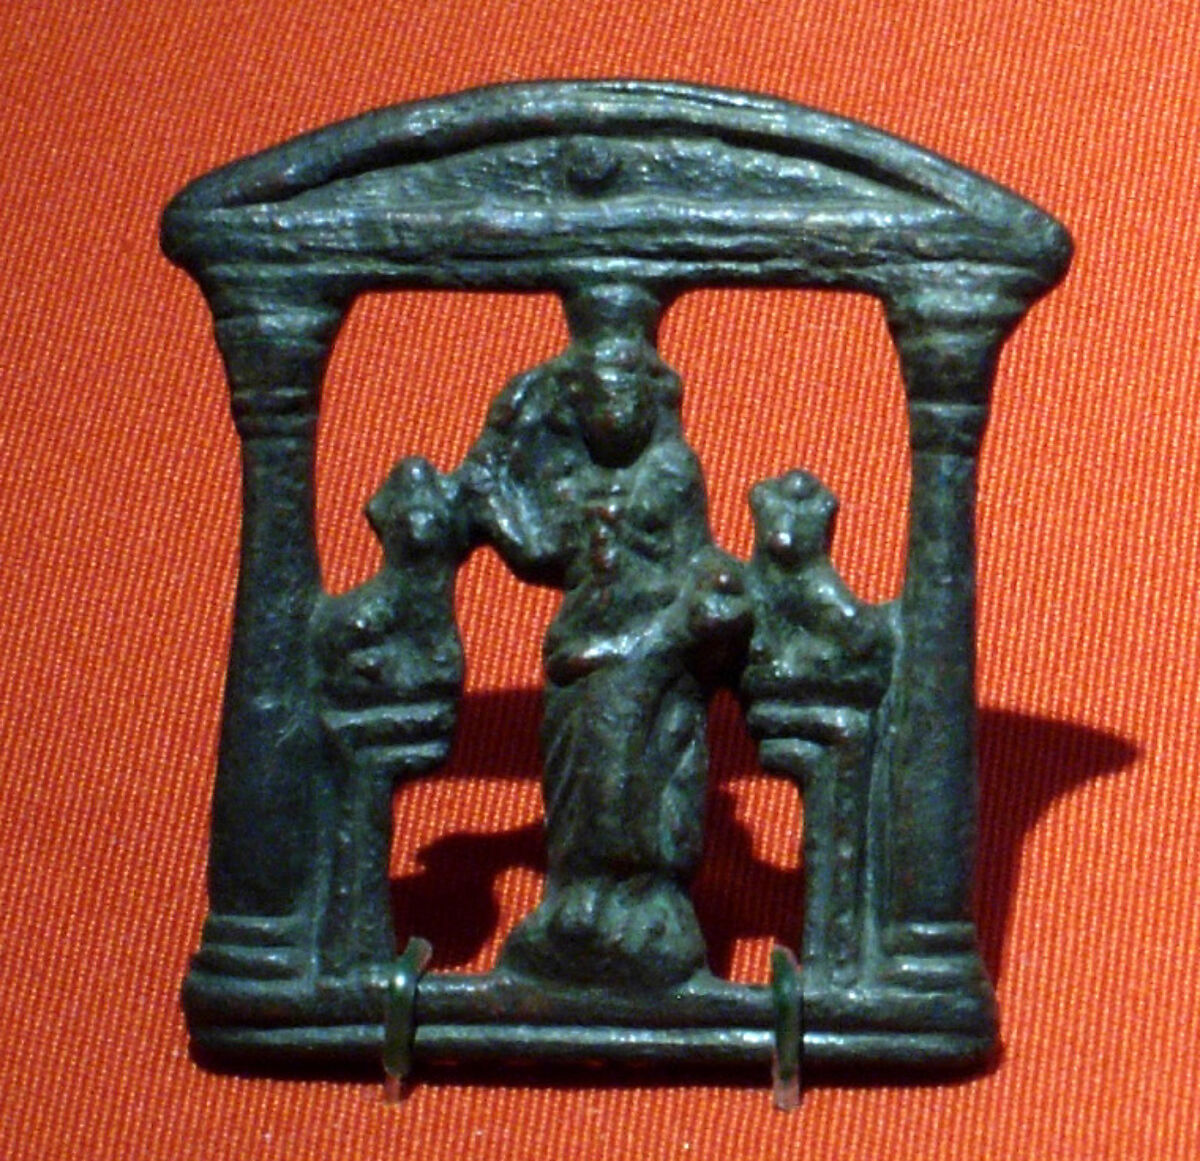 Plaque representing an Egyptian open shrine (kiosk), Bronze 